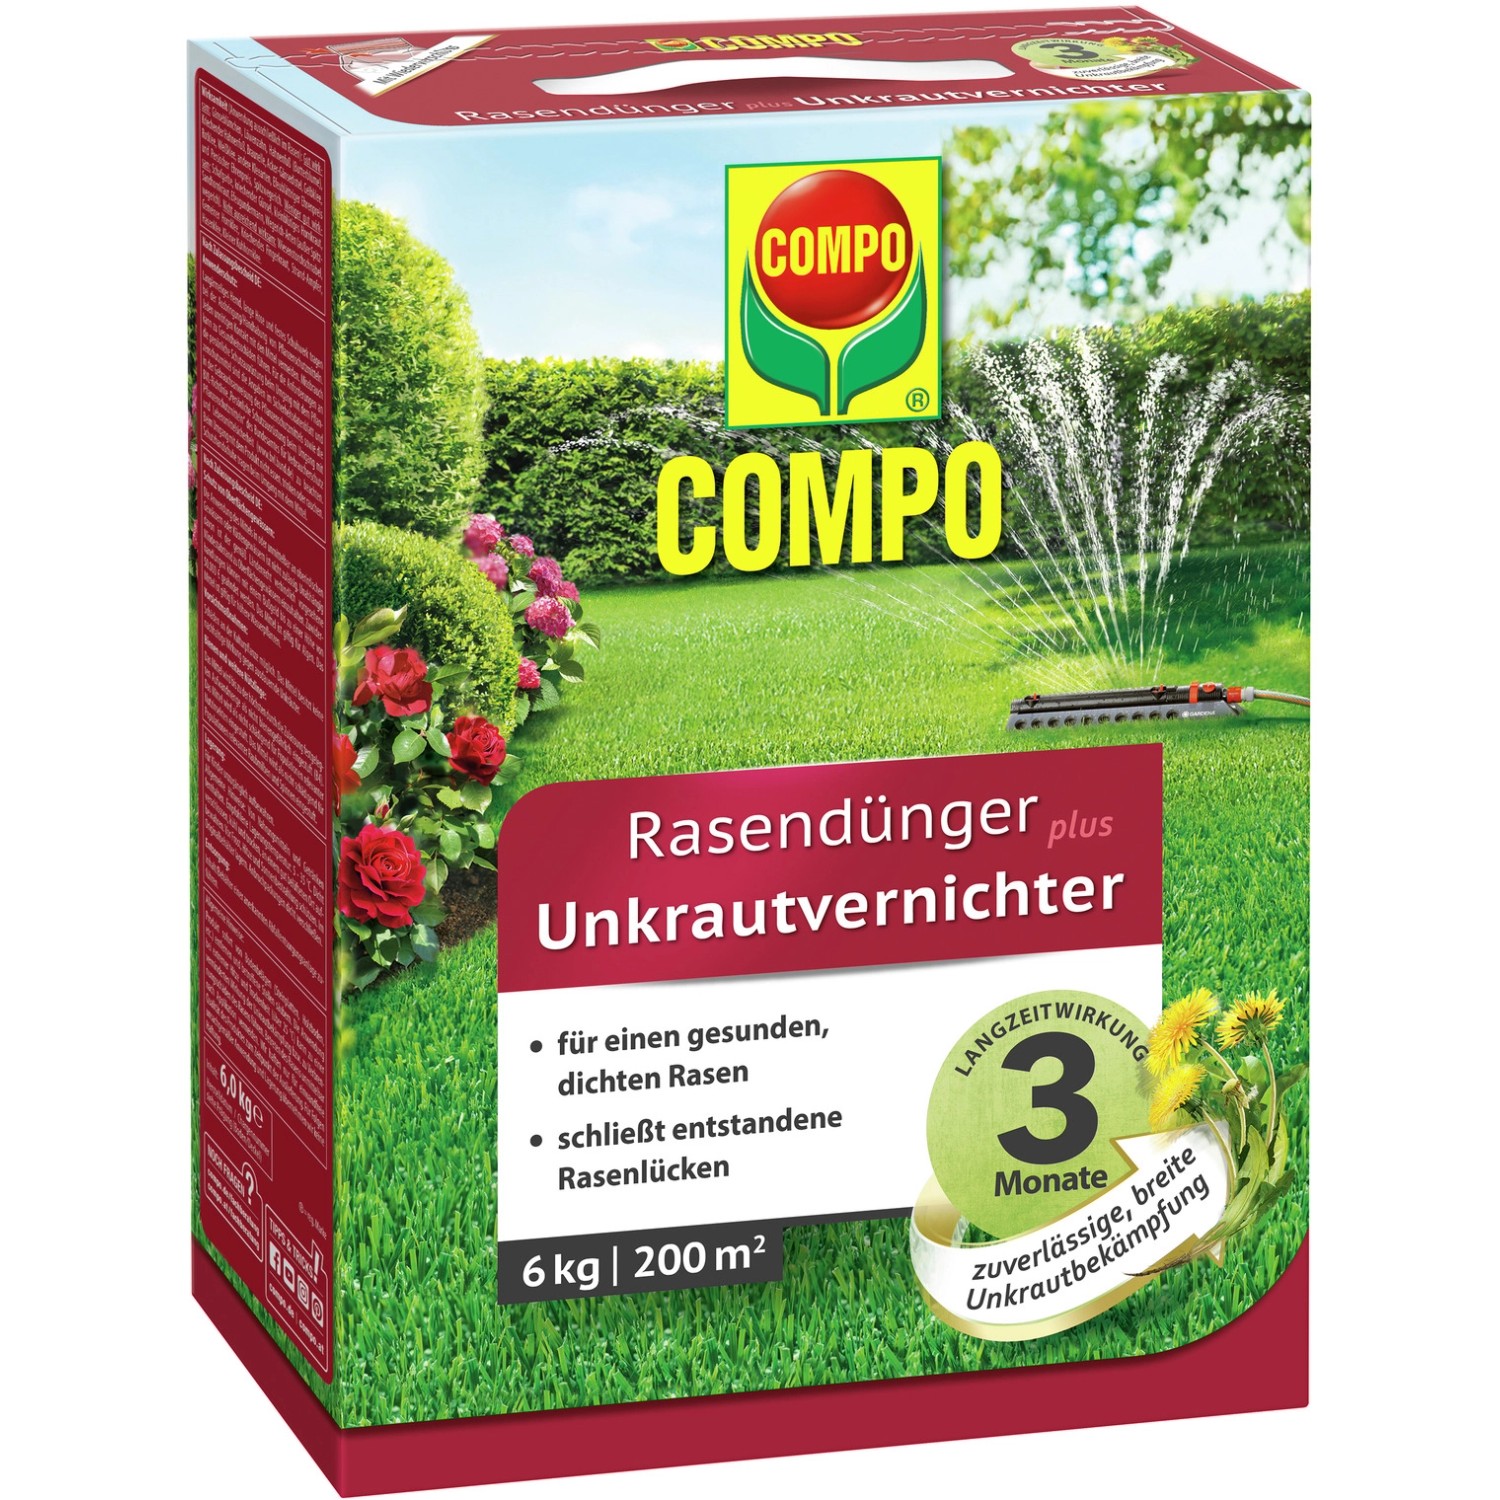 Compo Rasendünger plus Unkrautvernichter 6 kg für 200 m² von Compo